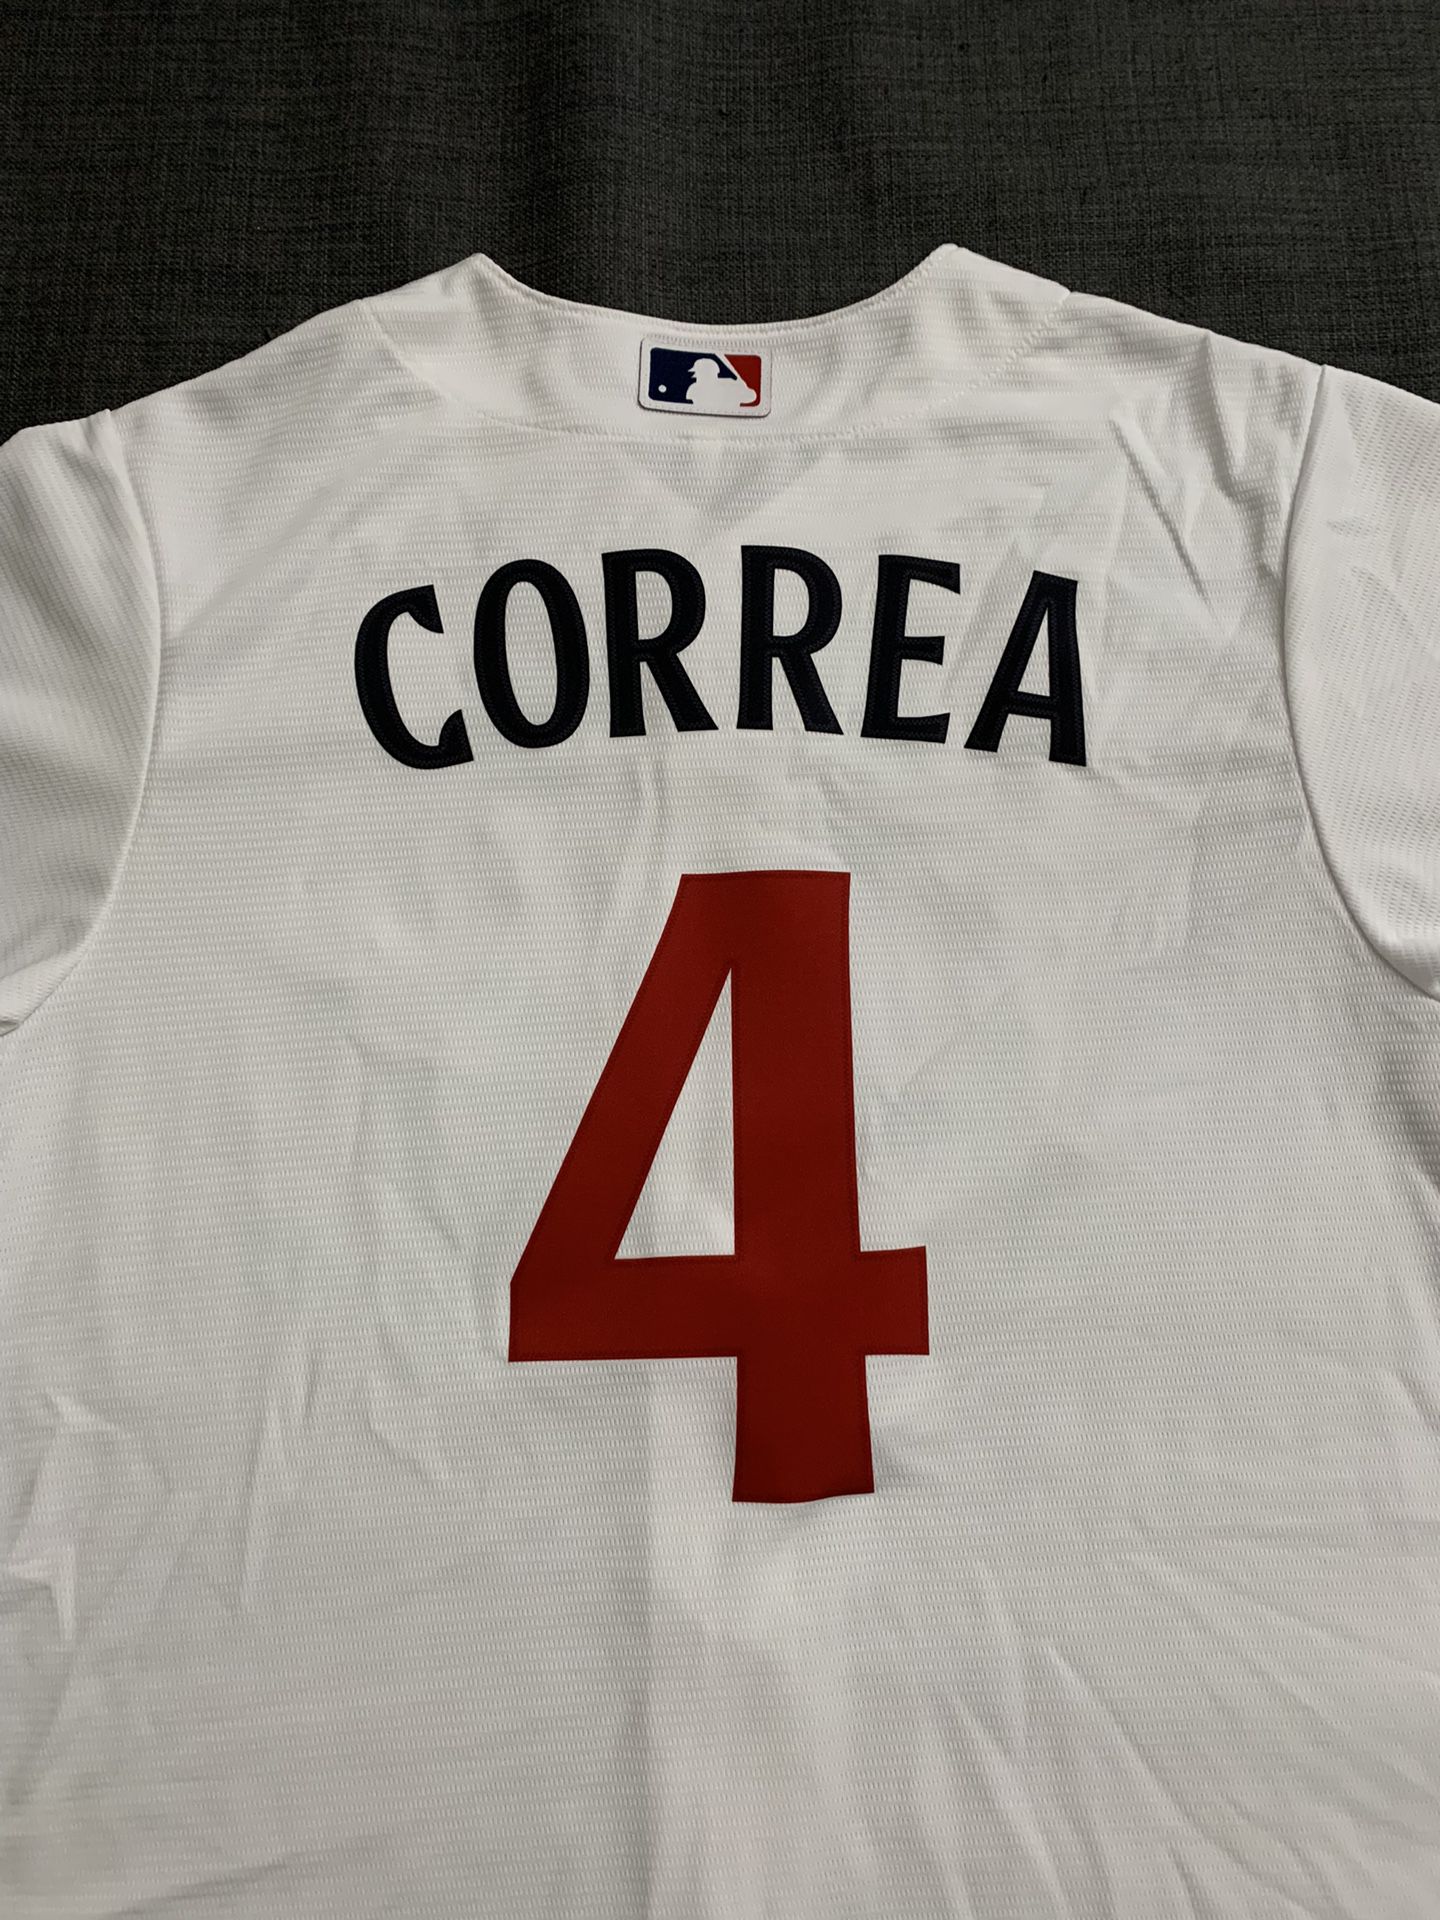 Carlos Correa Jerseys, Carlos Correa Shirt, MLB Carlos Correa